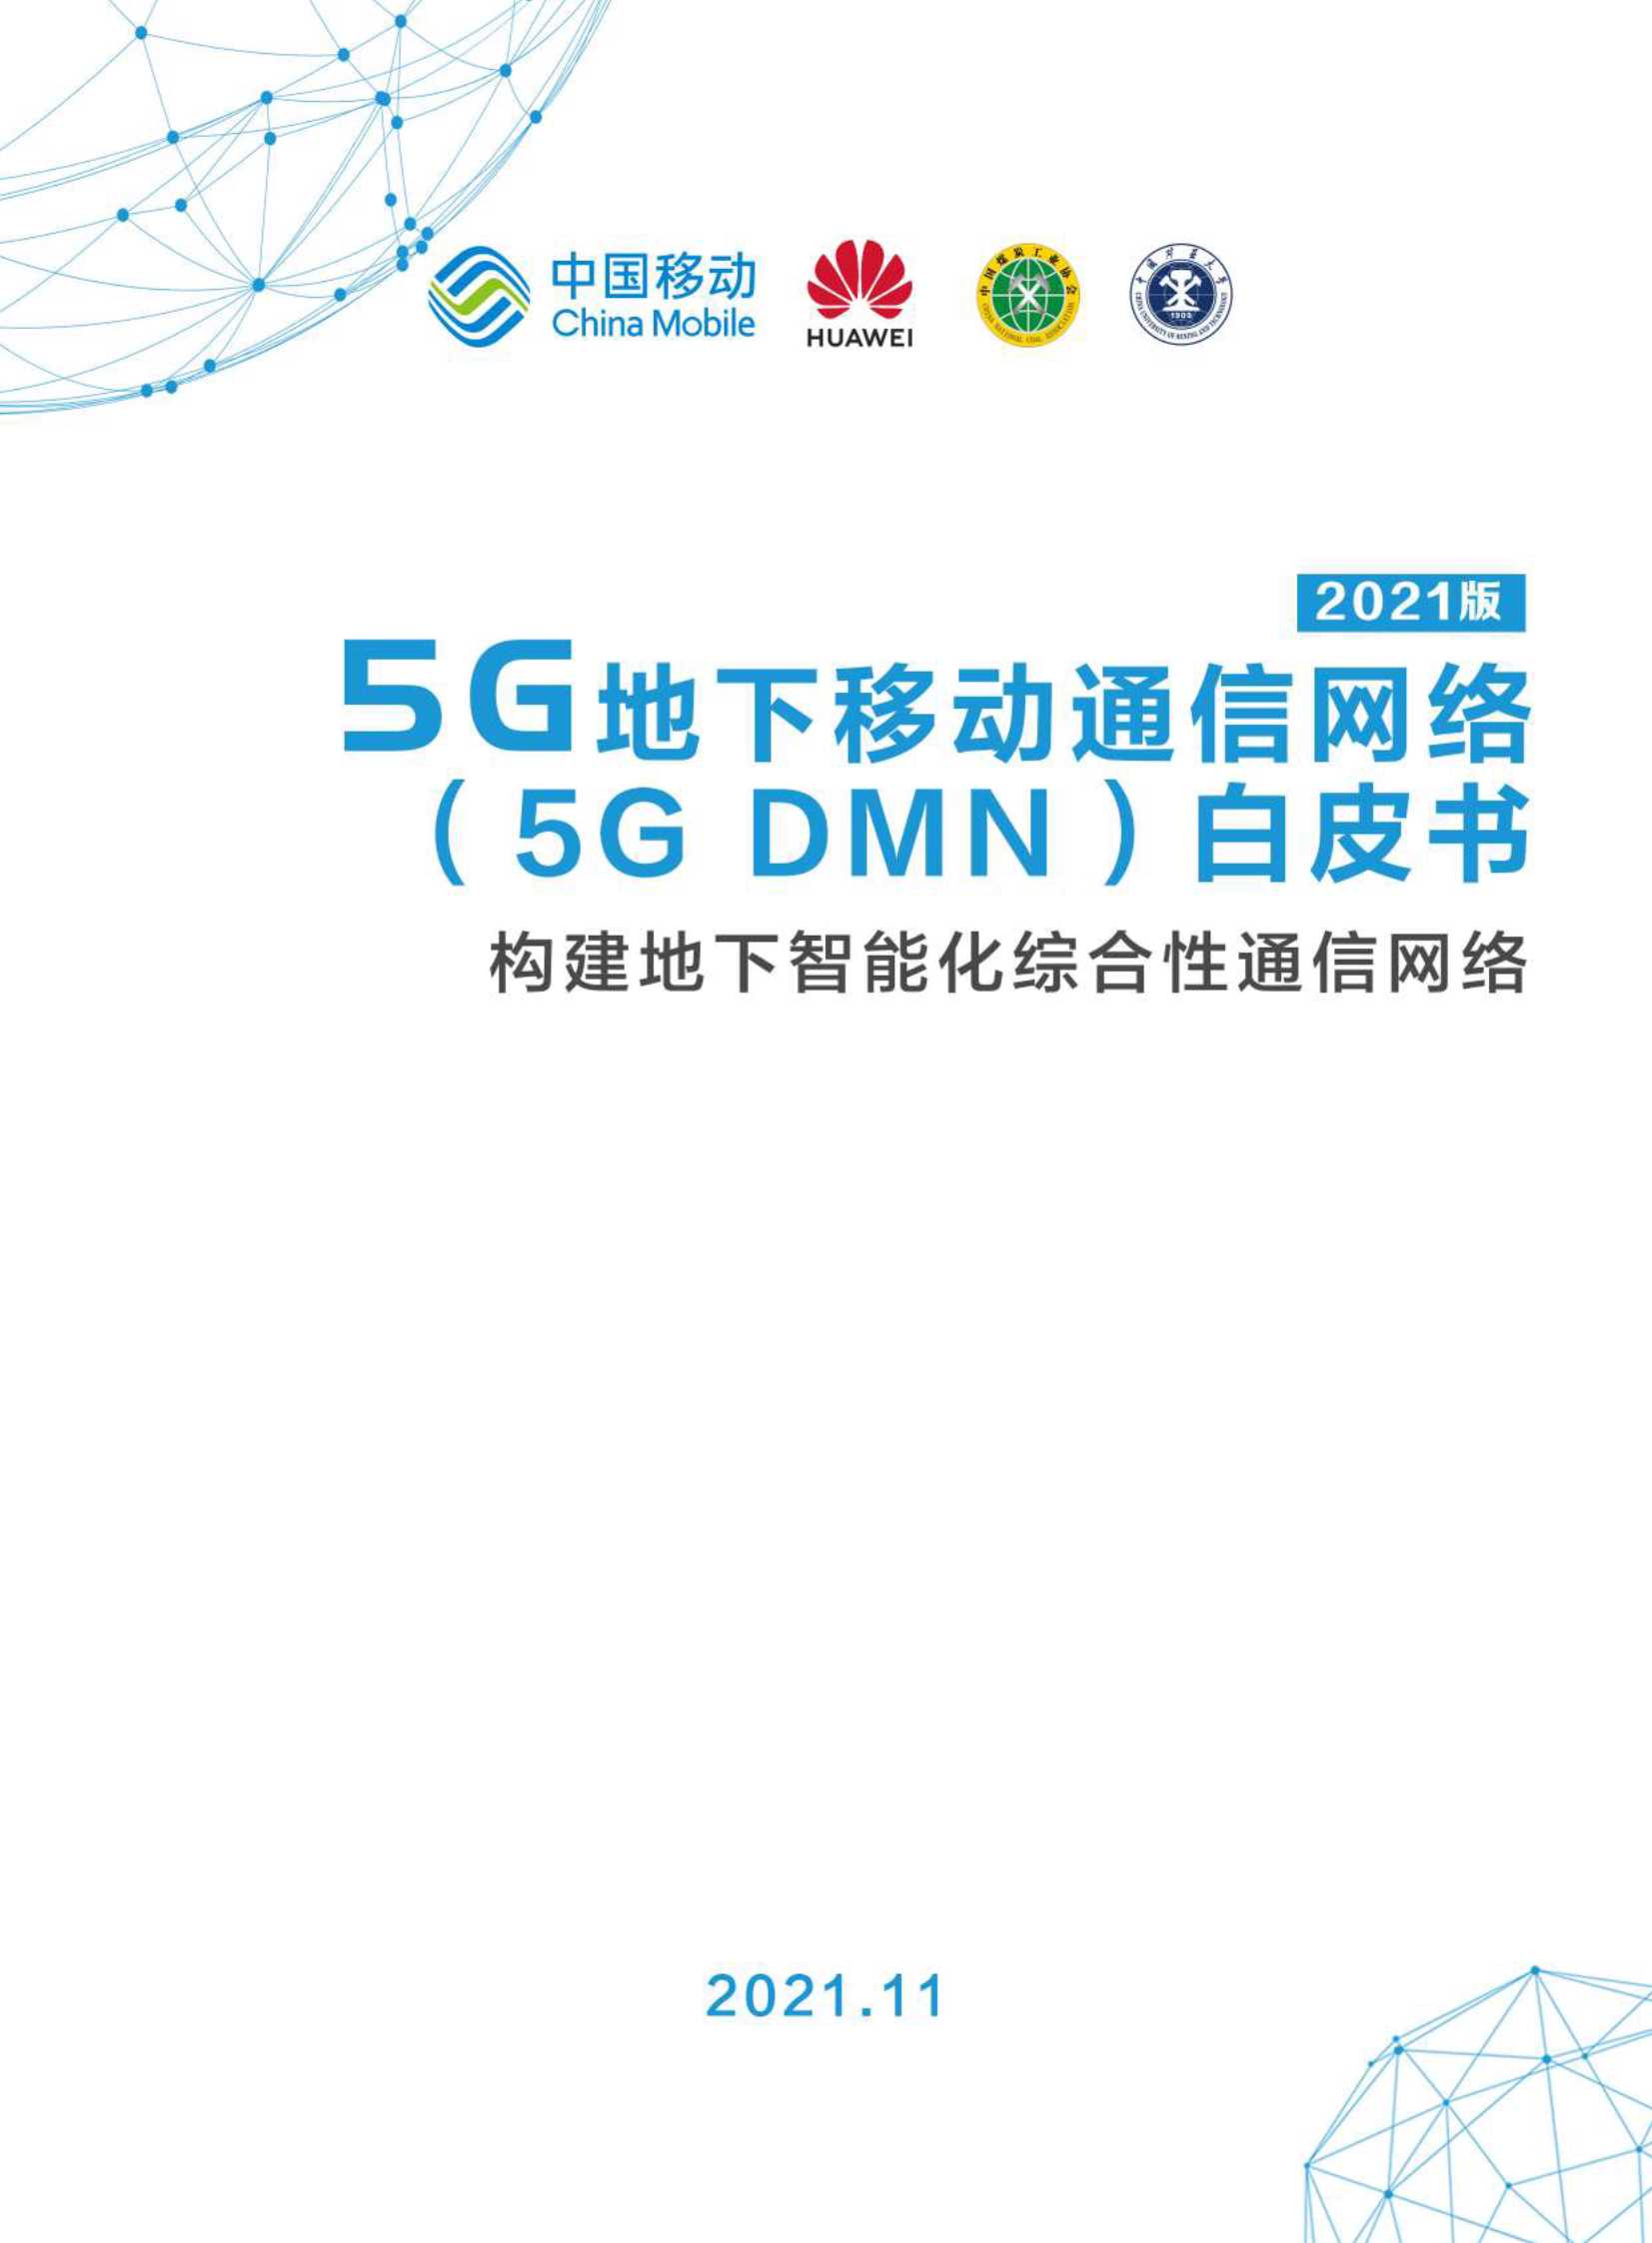 中国移动-互联网行业5G地下移动通信网络（5G DMN）白皮书2021版：构建地下智能化综合性通信网络-2021.11-26页